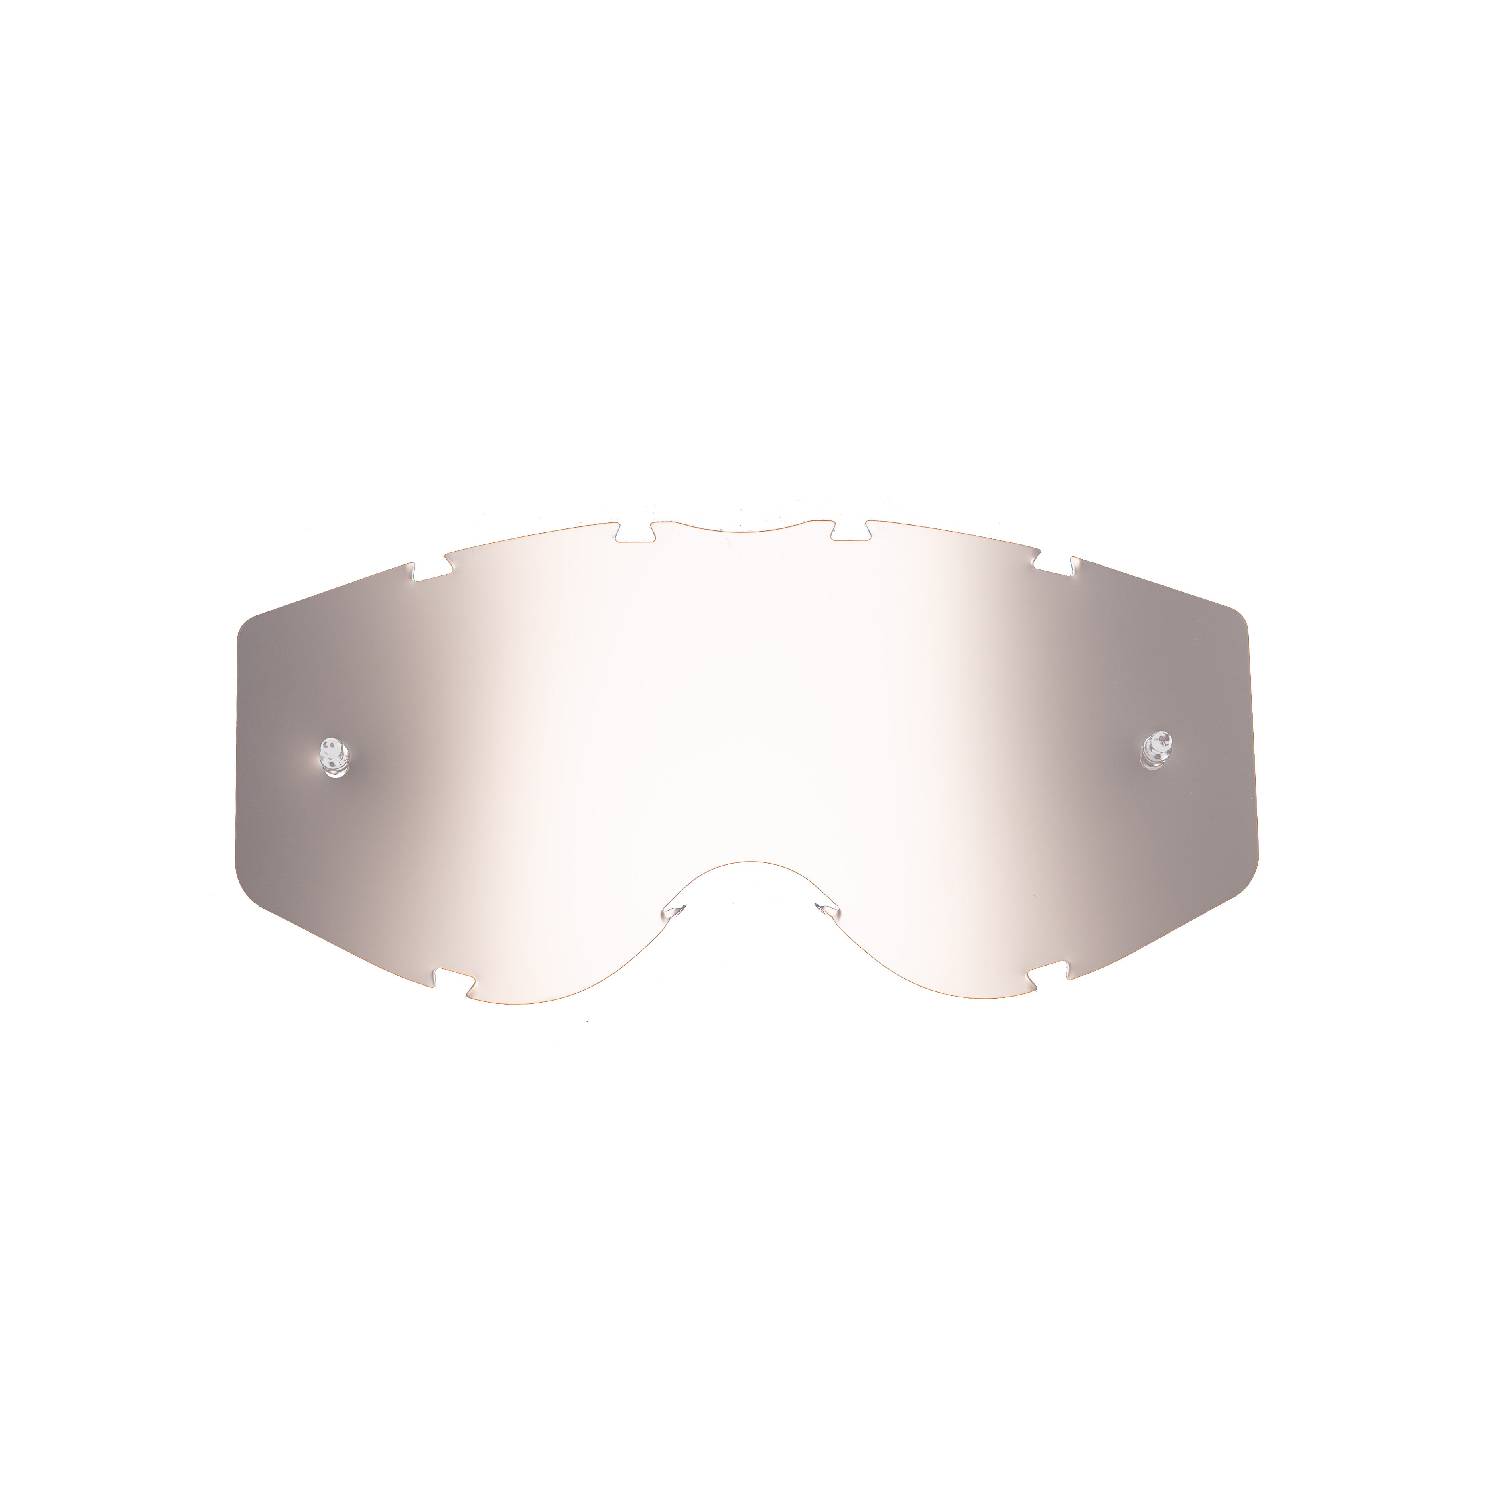 Lente di ricambio argento specchiato compatibile per occhiale/maschera Progrip 3303 Vista